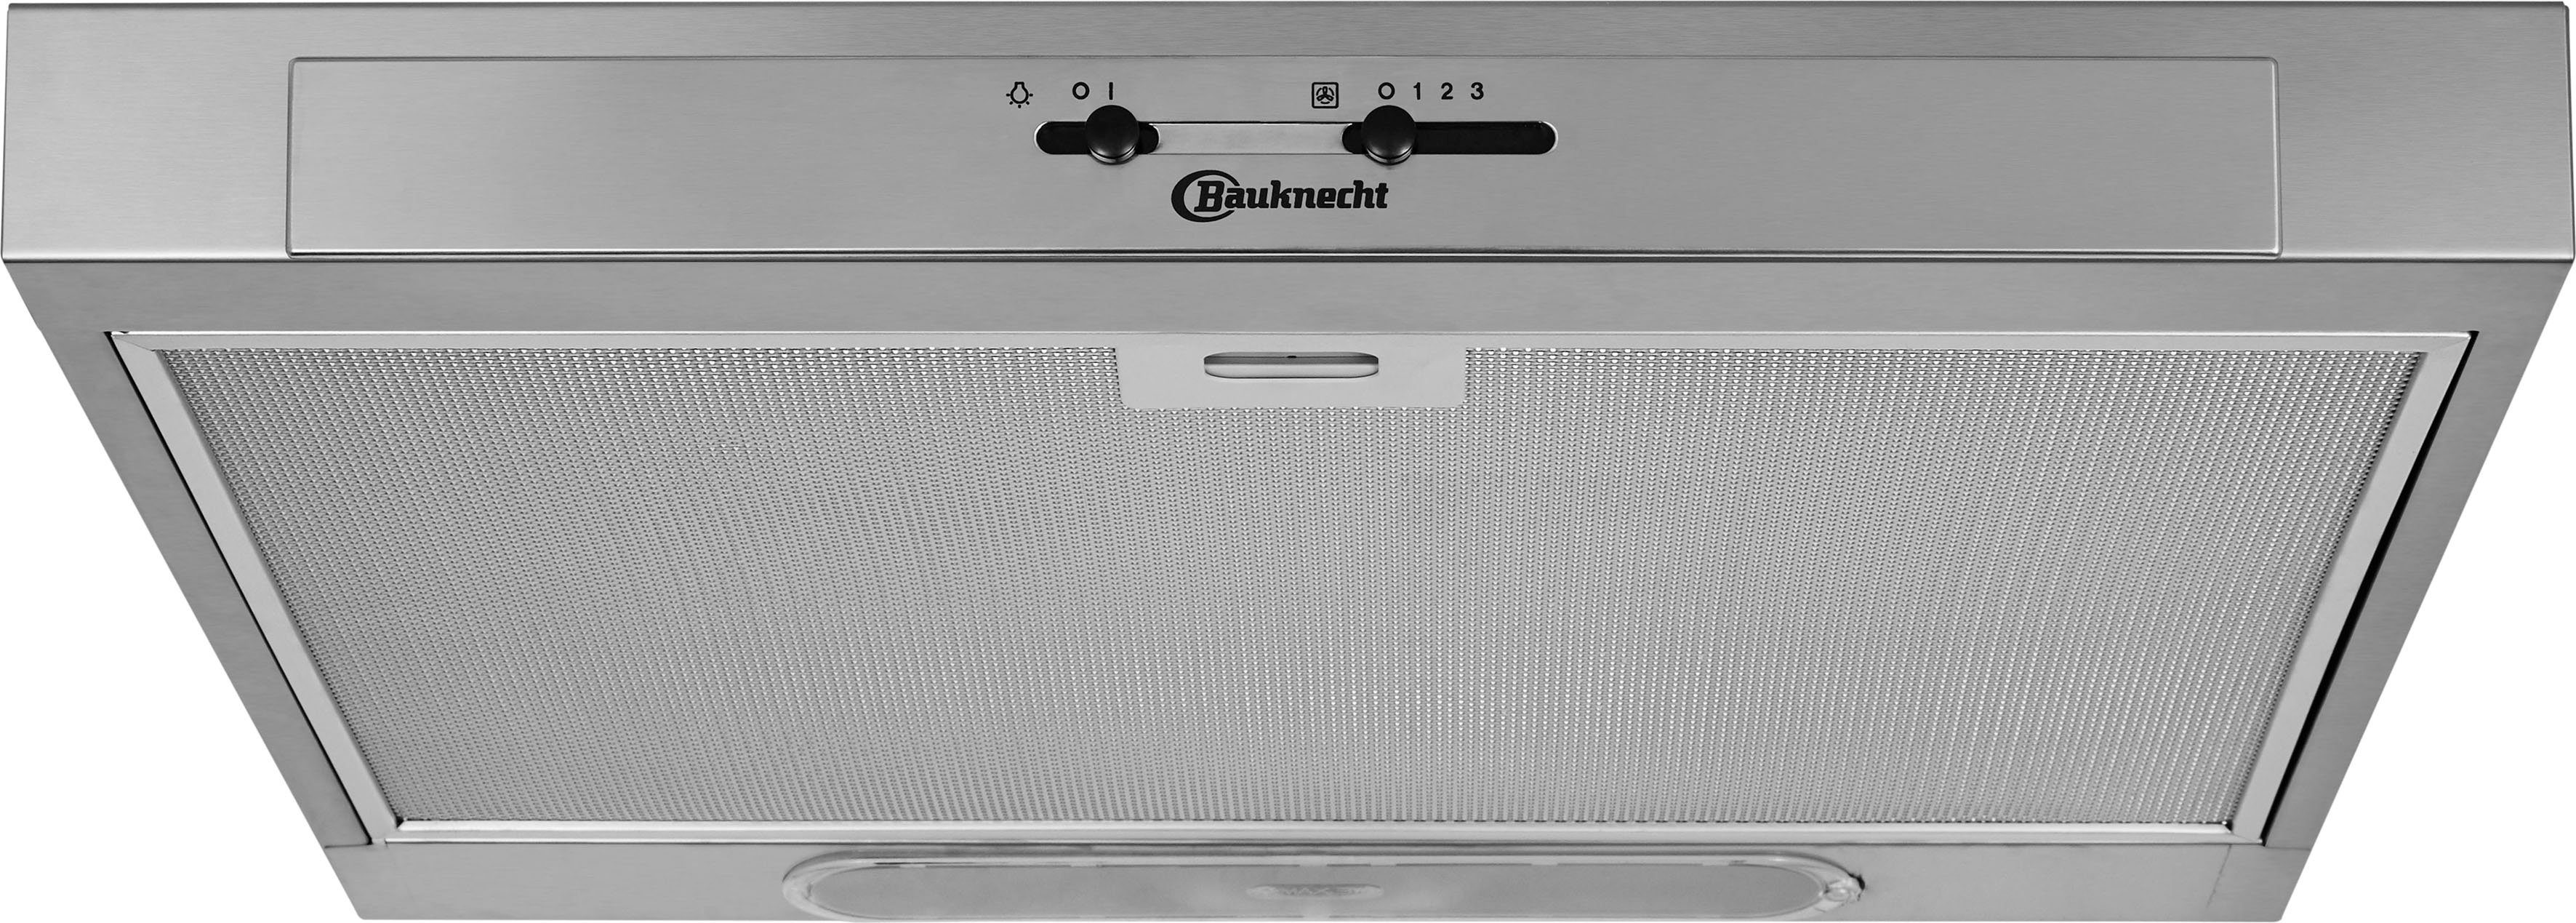 BAUKNECHT cm DC 5460 Unterbauhaube 60 IN/1,